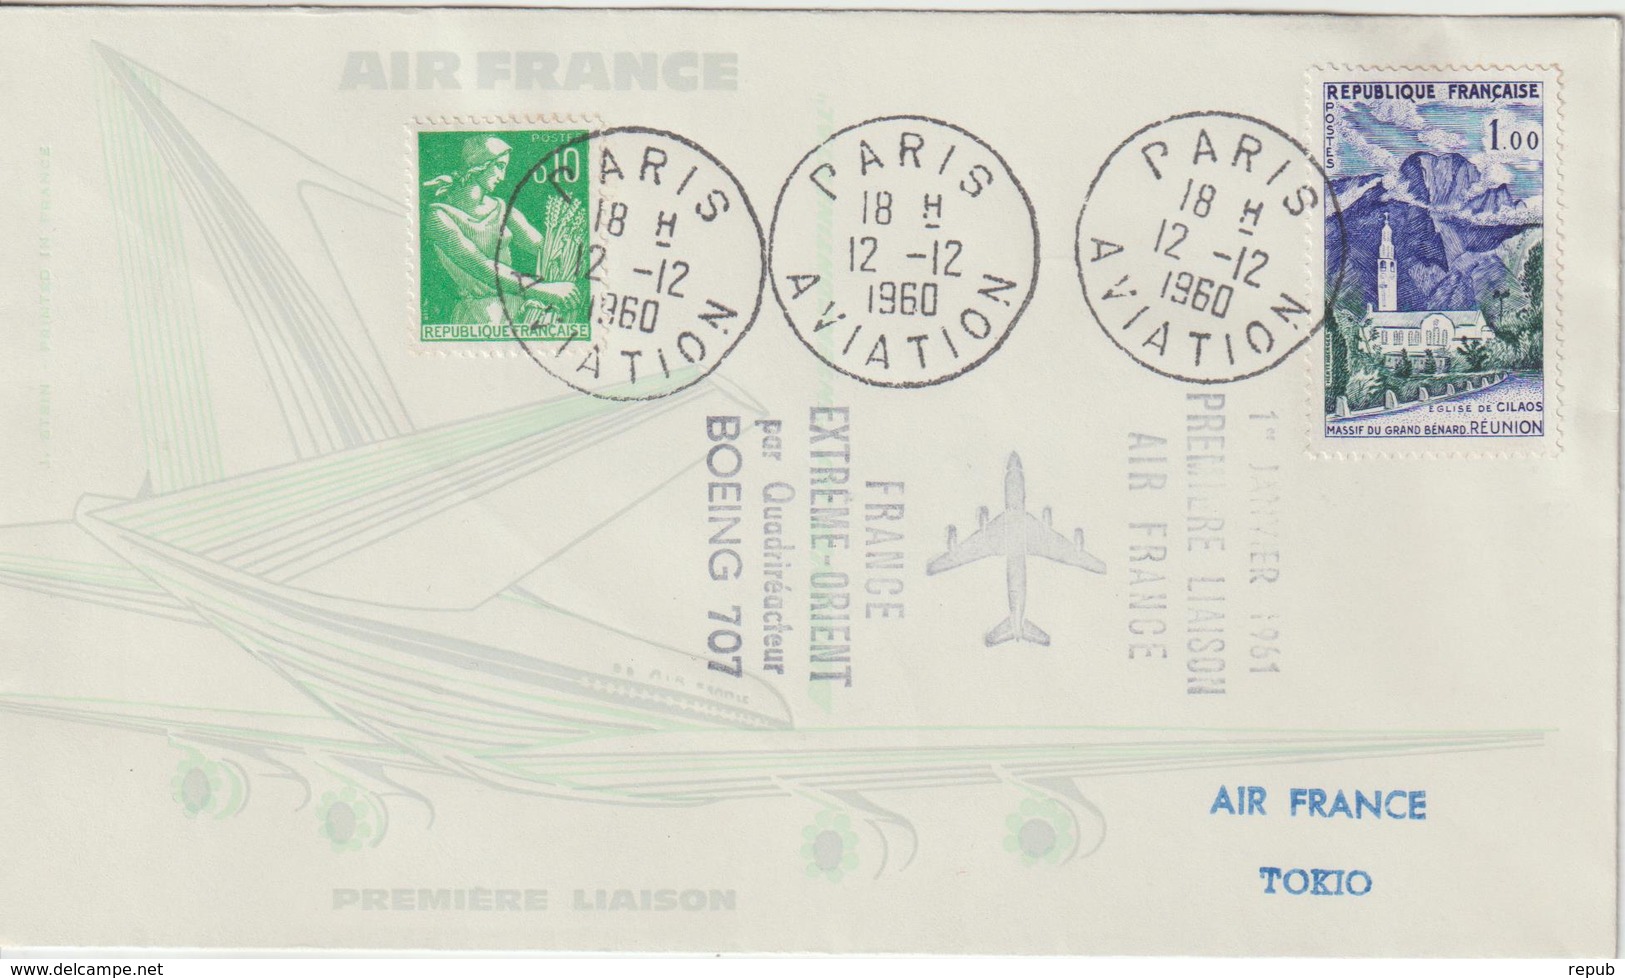 France 1960 Première Liaison Air France Paris Tokyo - Primeros Vuelos